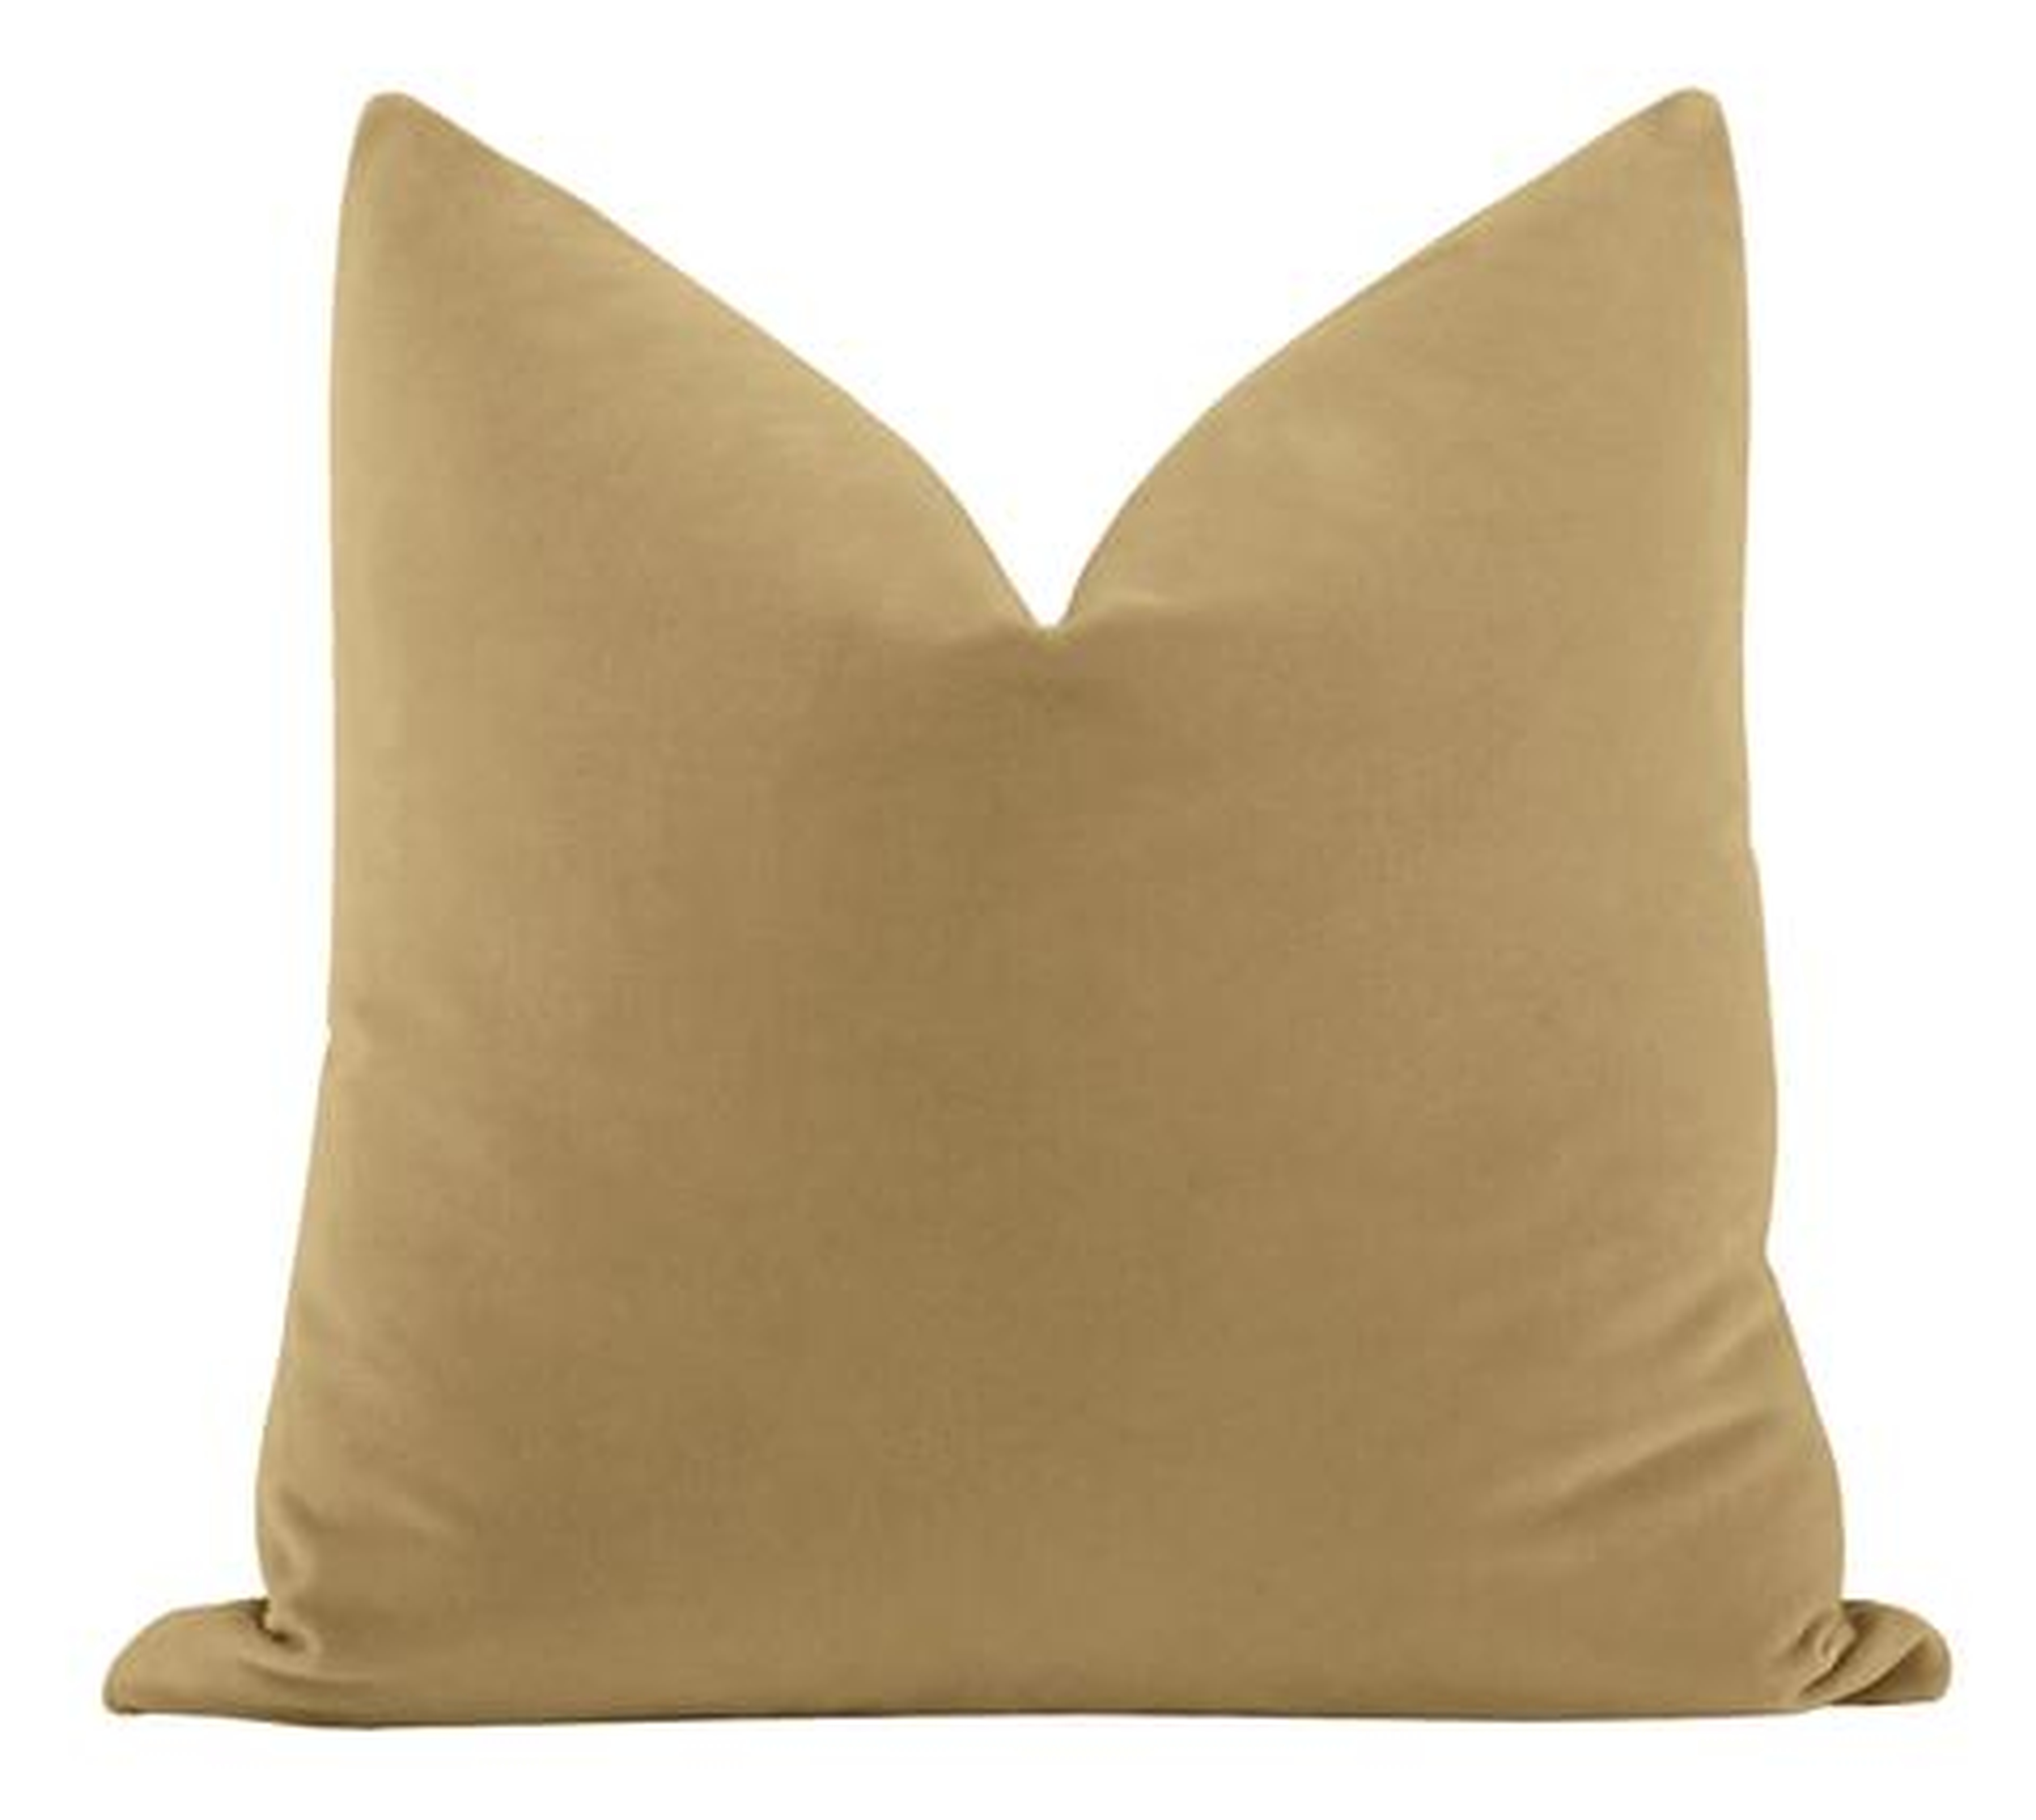 Studio Velvet Pillow Cover, Camel, - Little Design Company